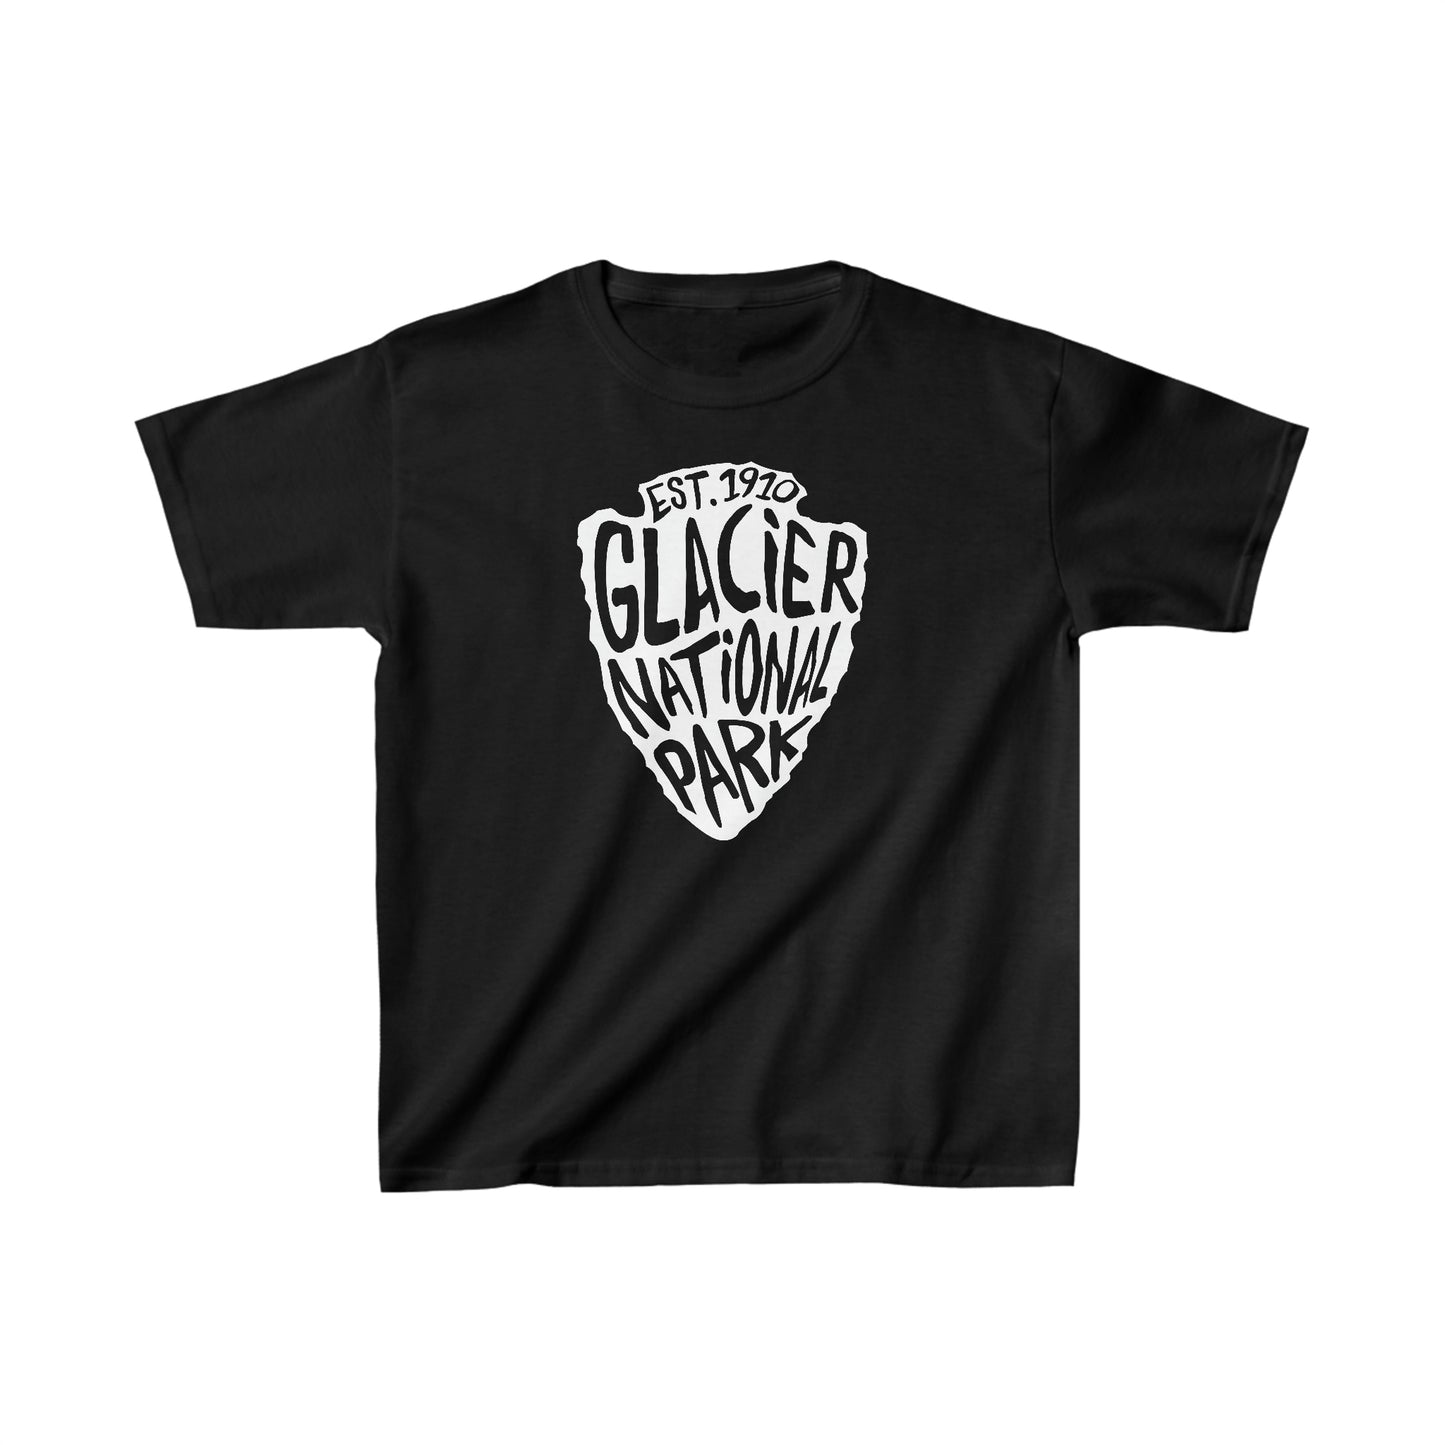 Glacier National Park Child T-Shirt - Arrowhead Design